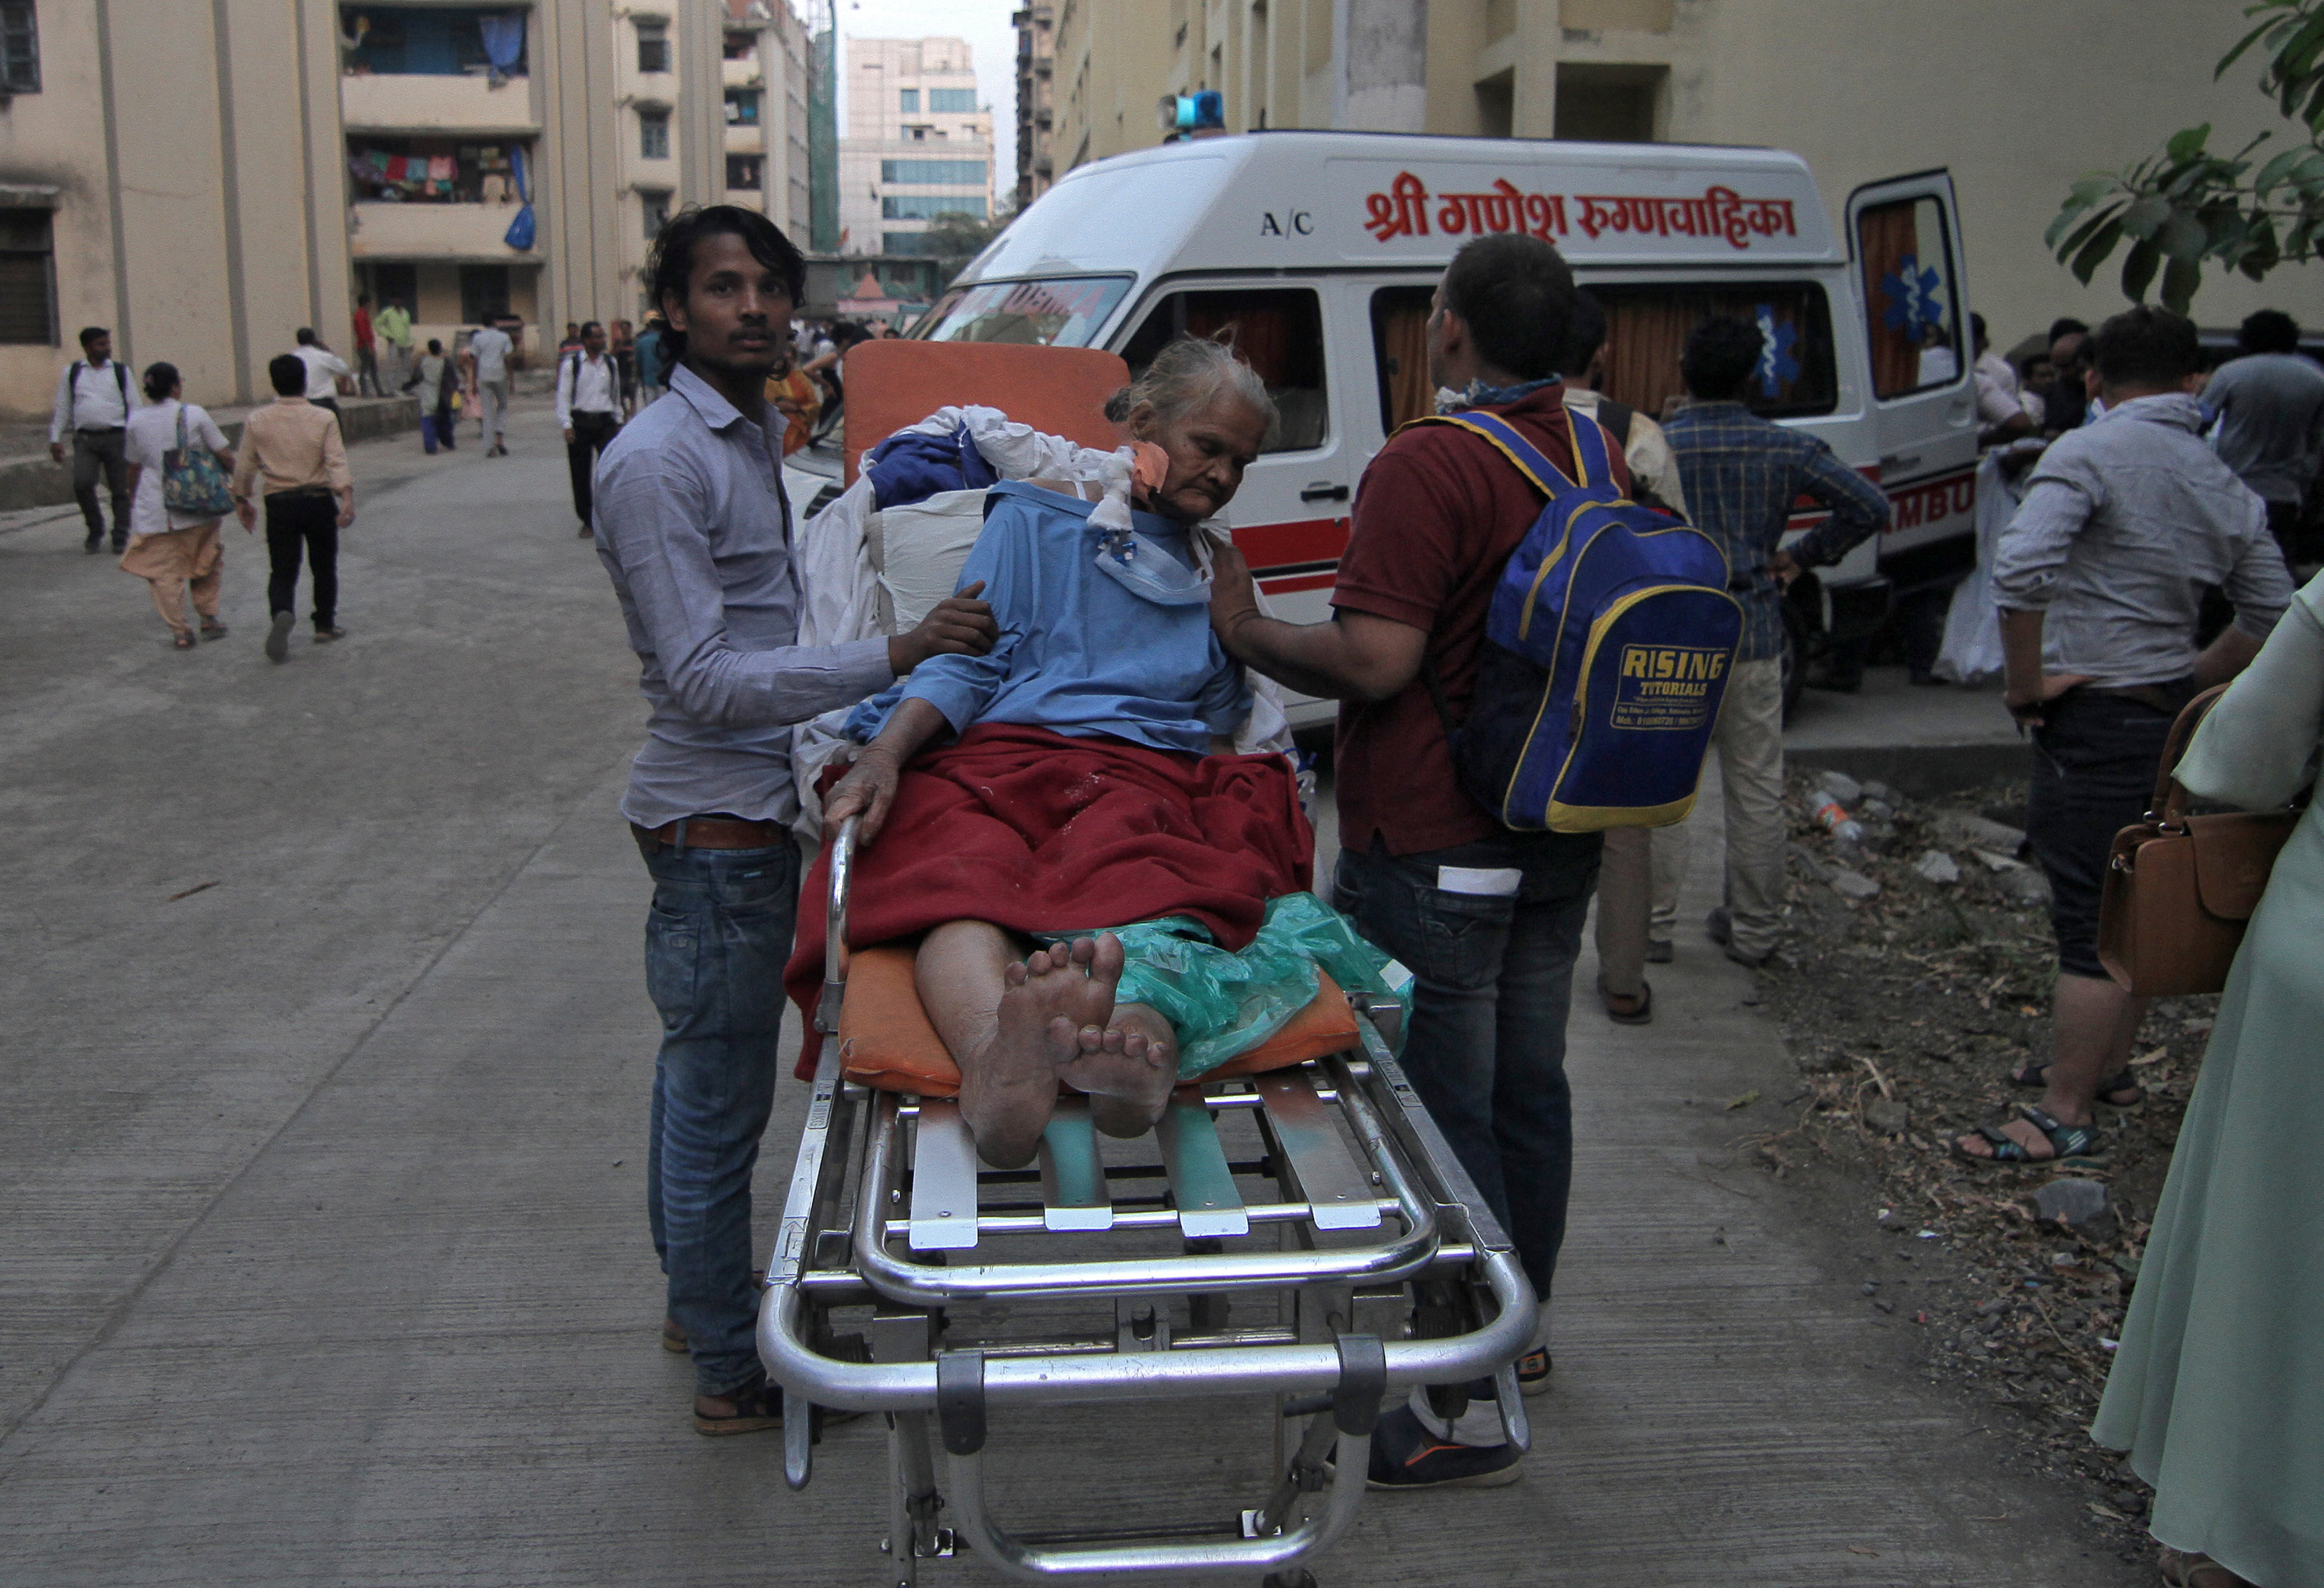 Al menos 5 muertos y 142 heridos en un incendio en un hospital de la India